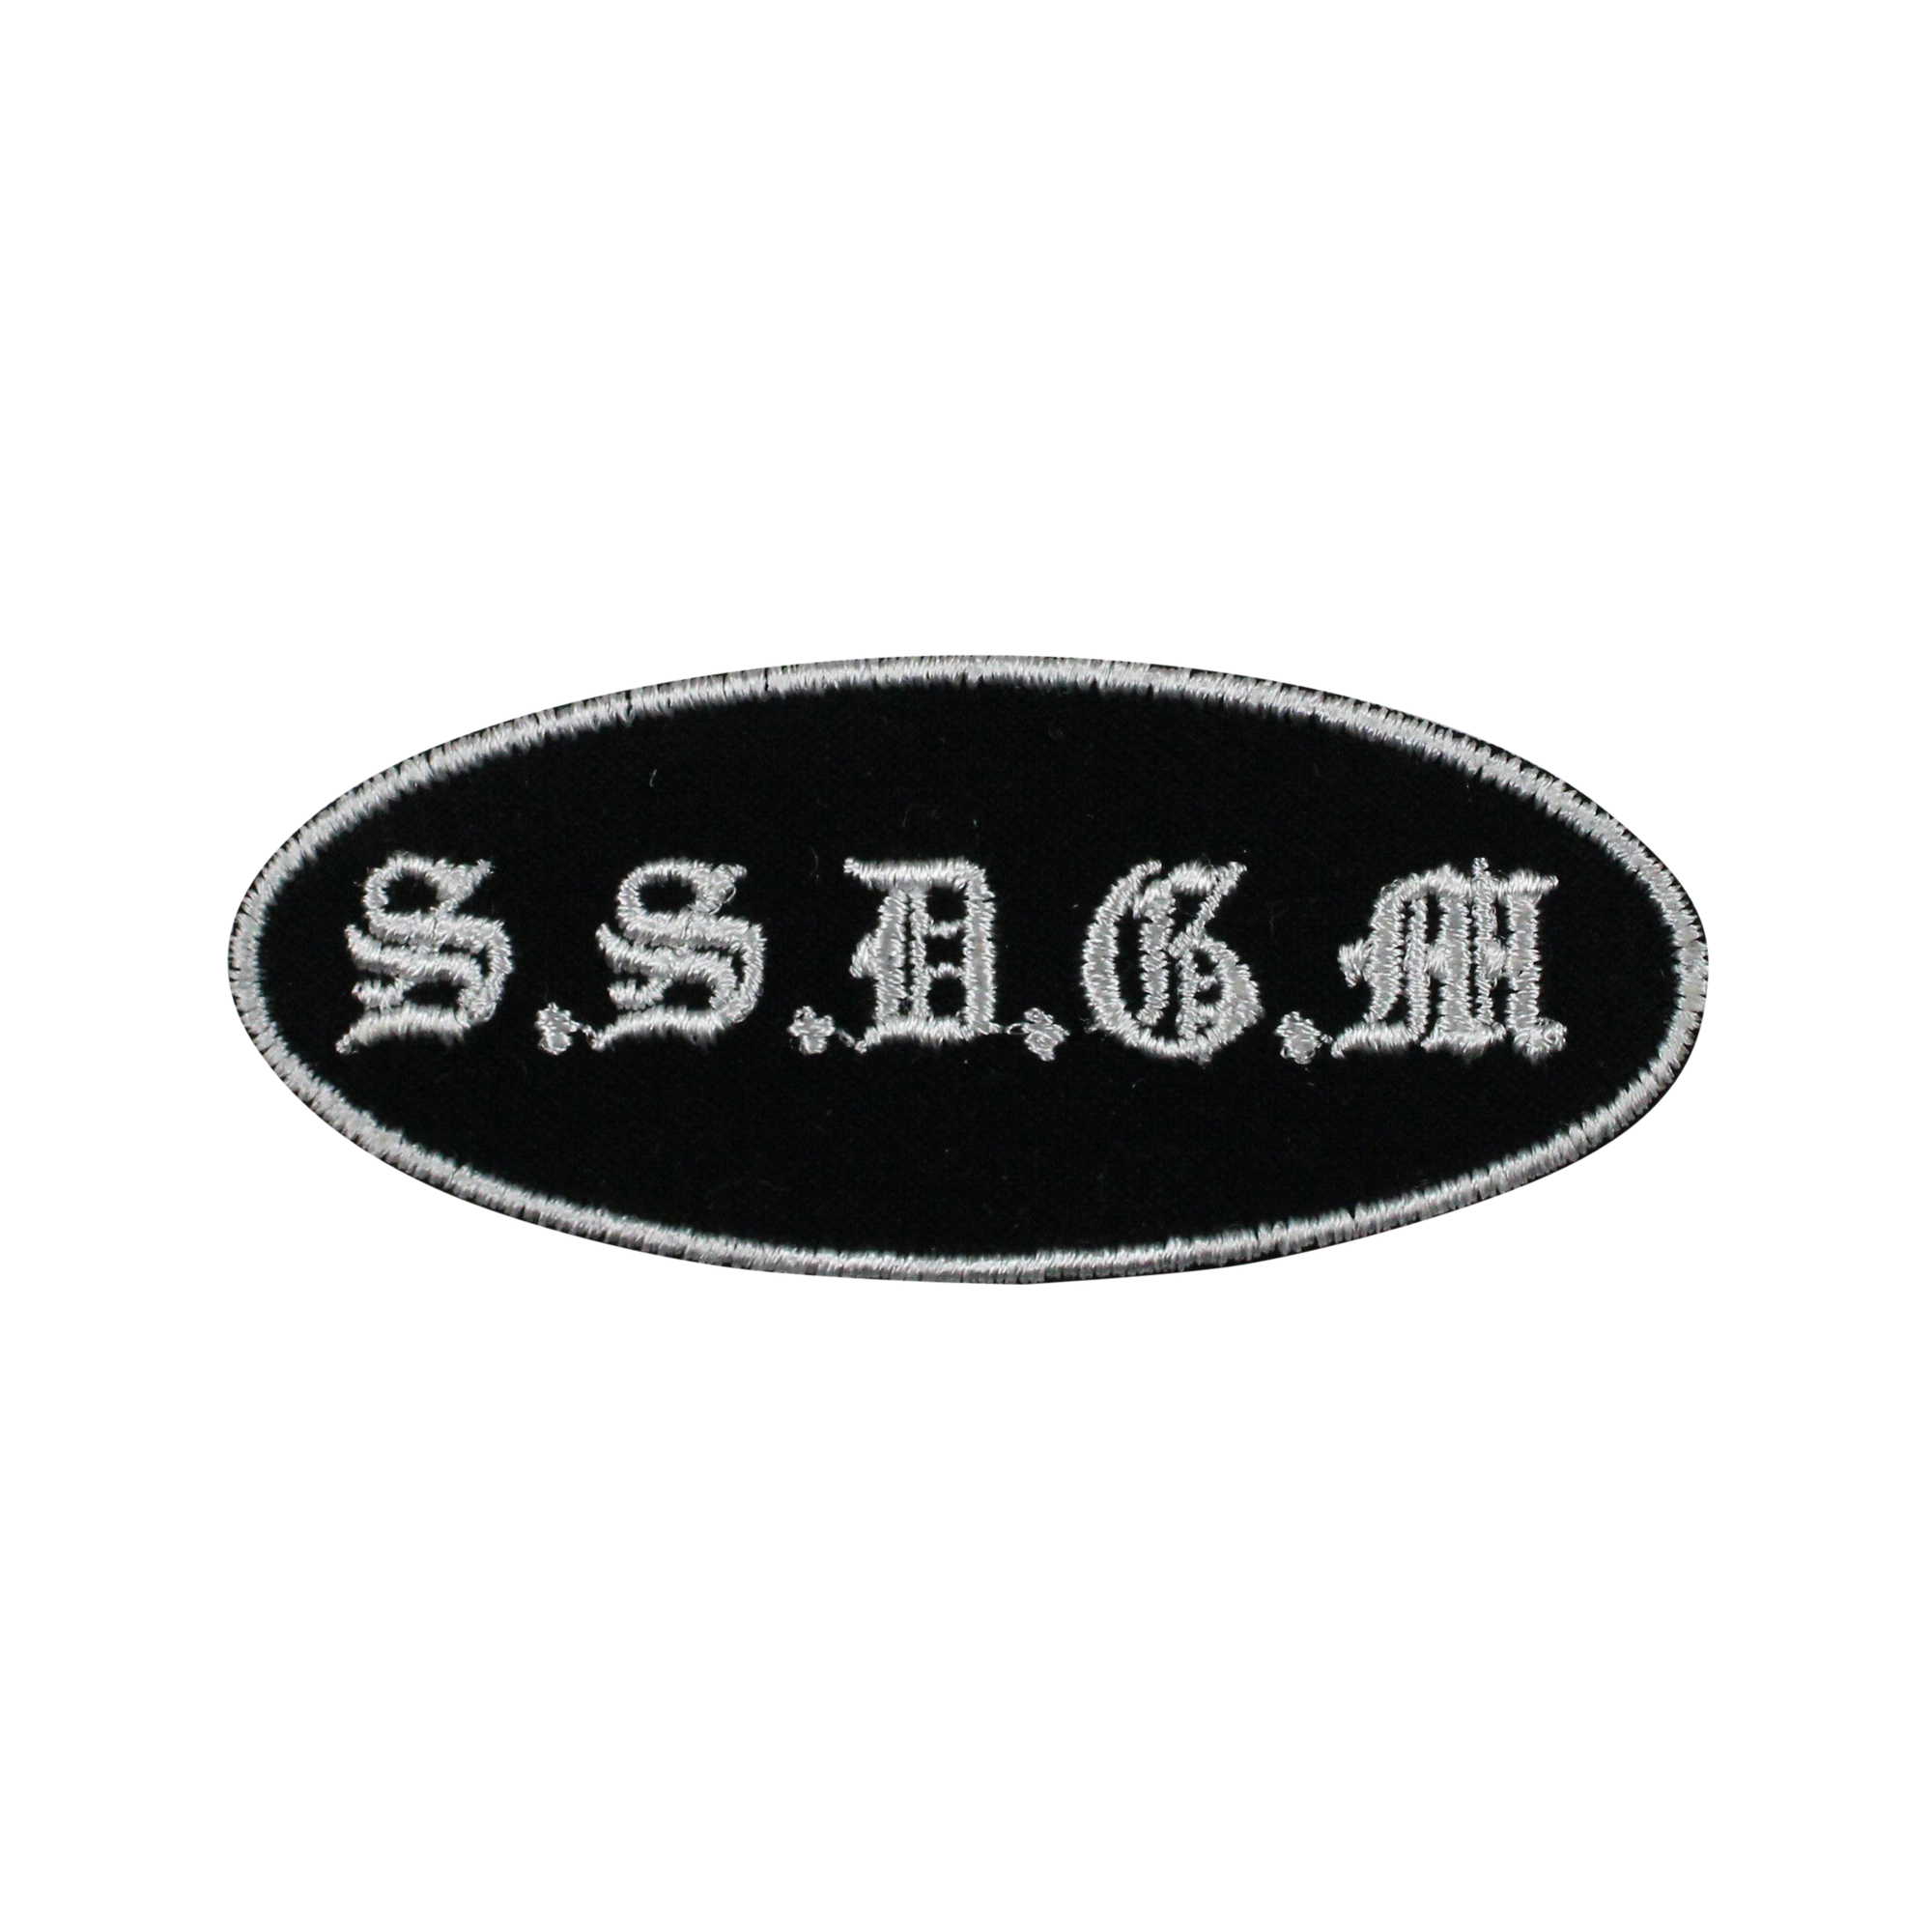 SSDGM Patch